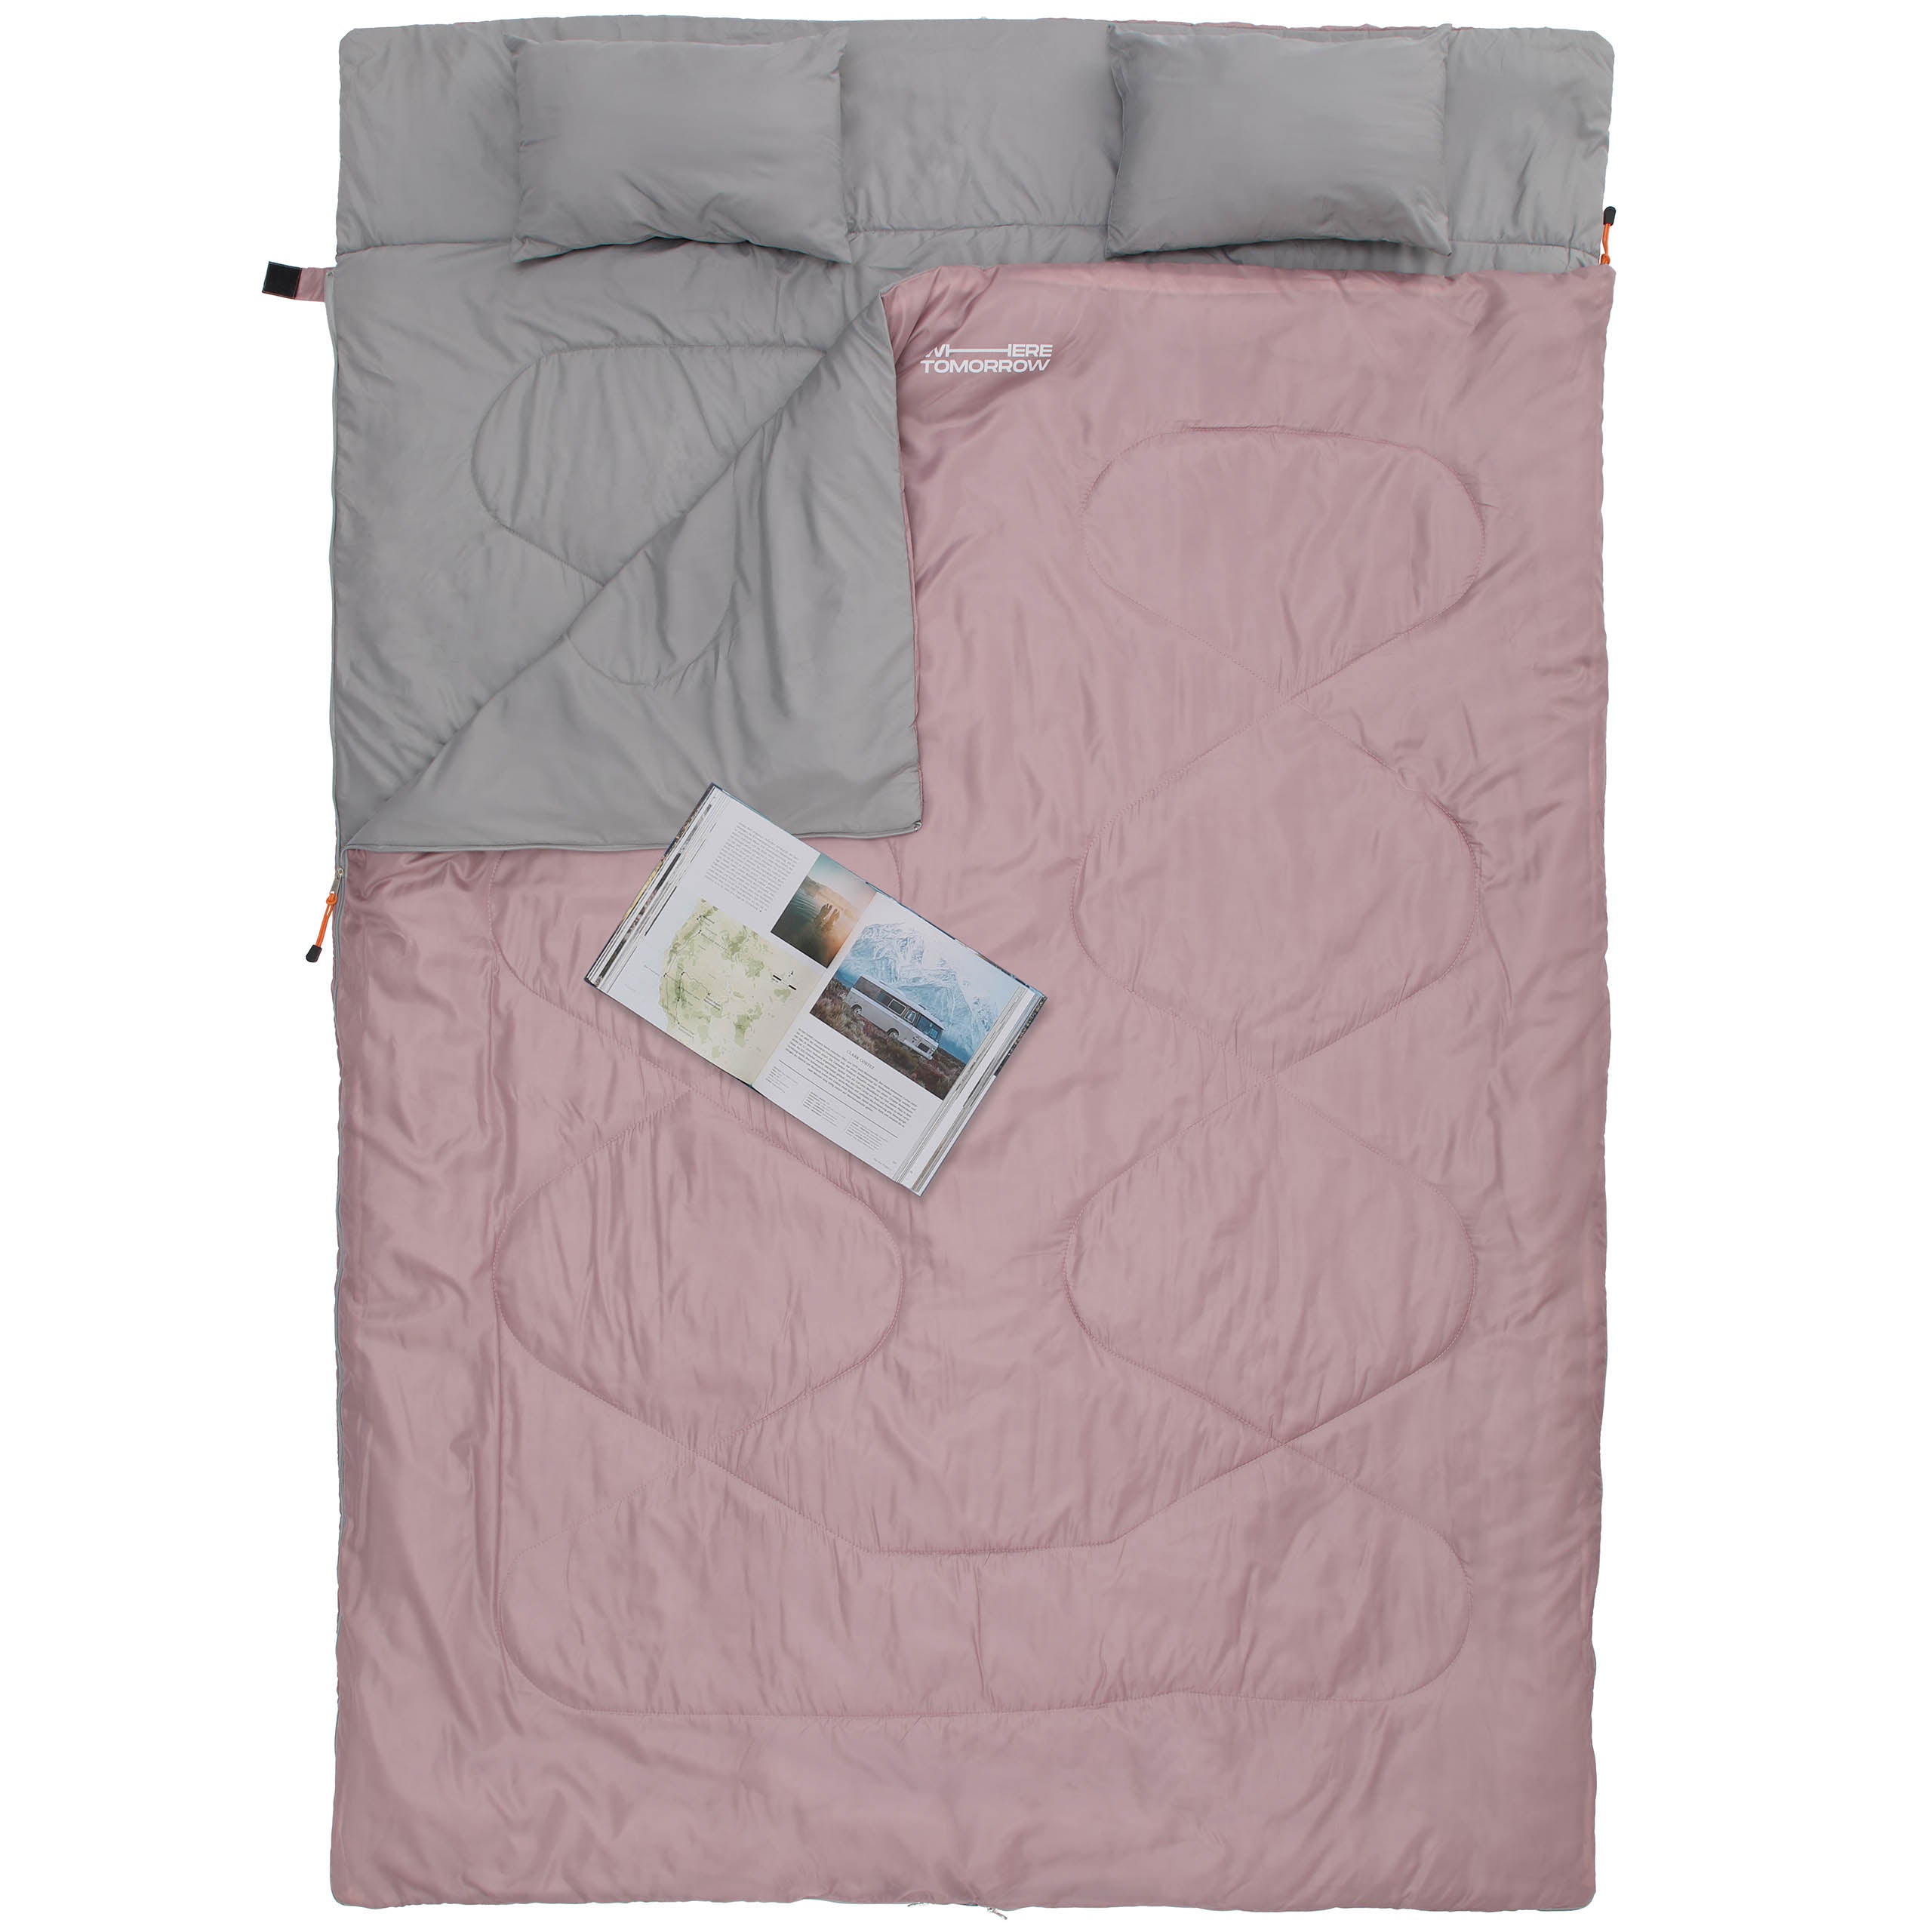 Doppelschlafsack mit Tragetasche - 2-Personen Schlafsack - 190 x 150 cm - Rosé